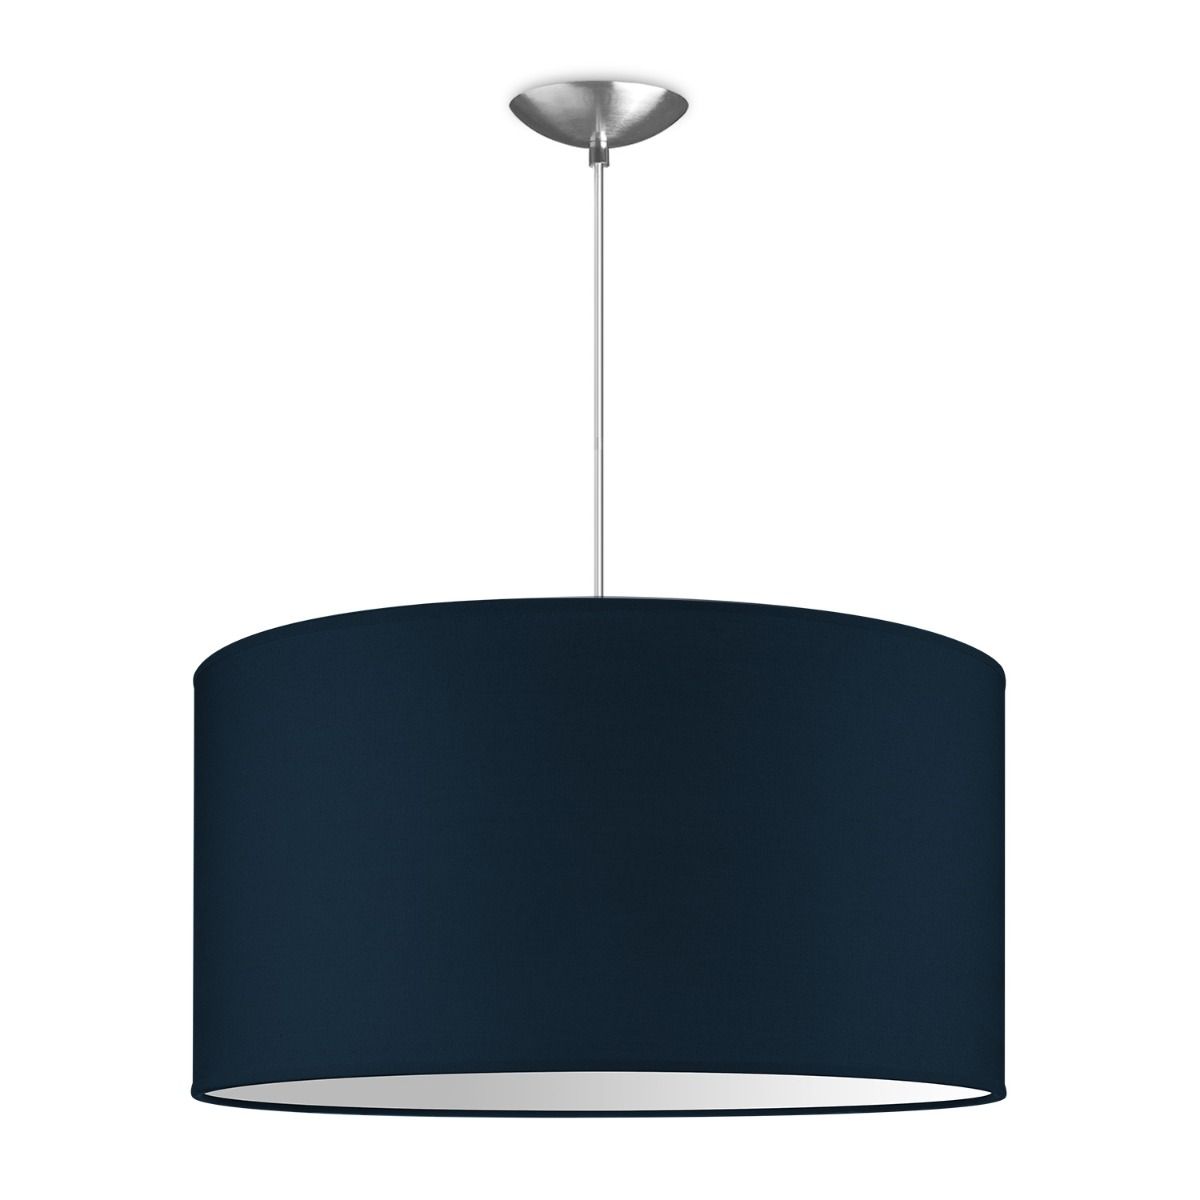 Light depot - hanglamp basic bling Ø 50 cm - blauw - Outlet